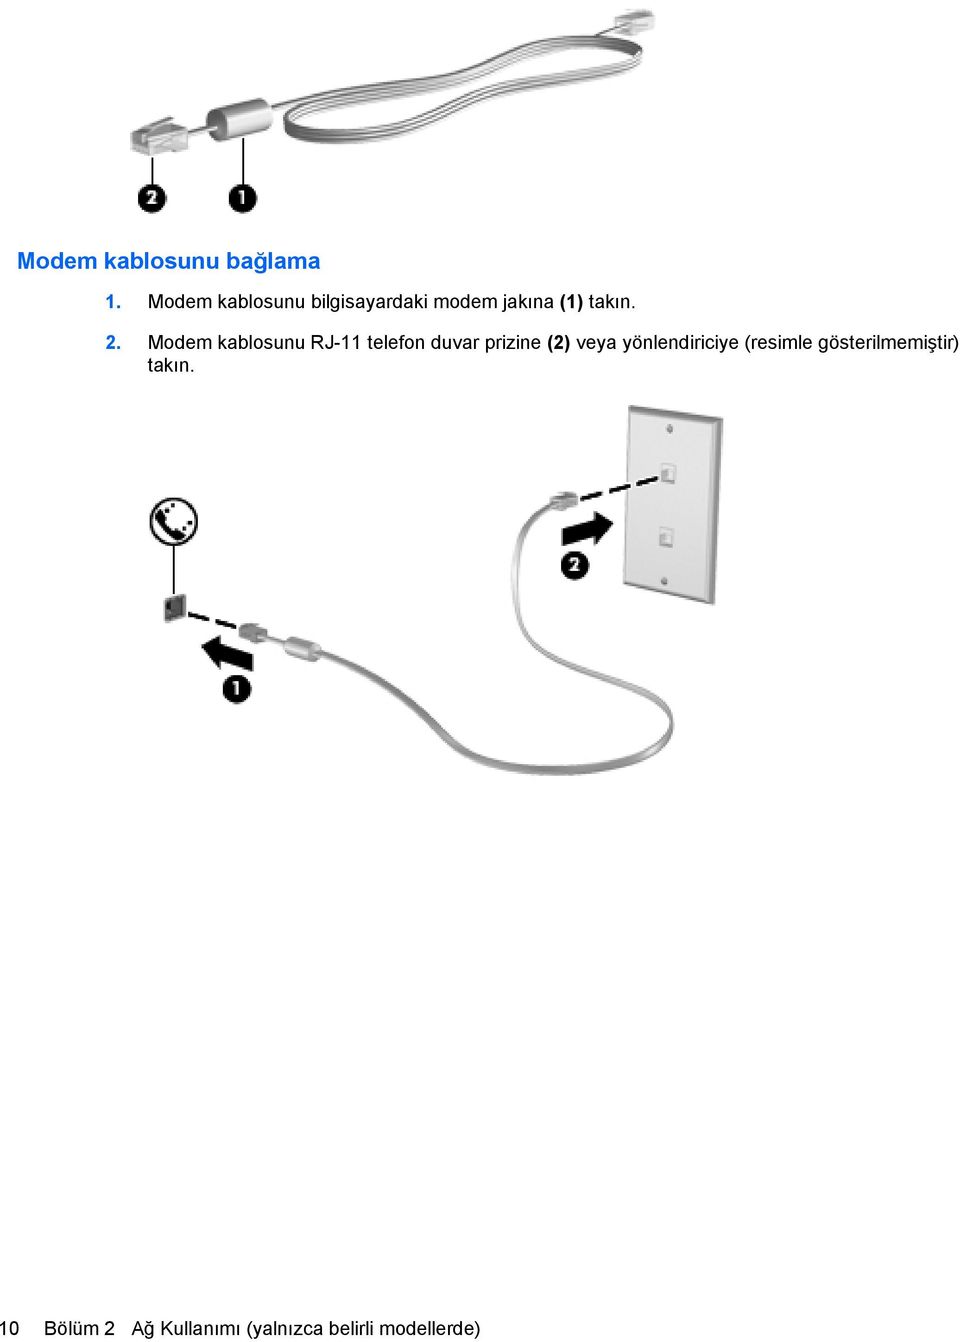 Modem kablosunu RJ-11 telefon duvar prizine (2) veya